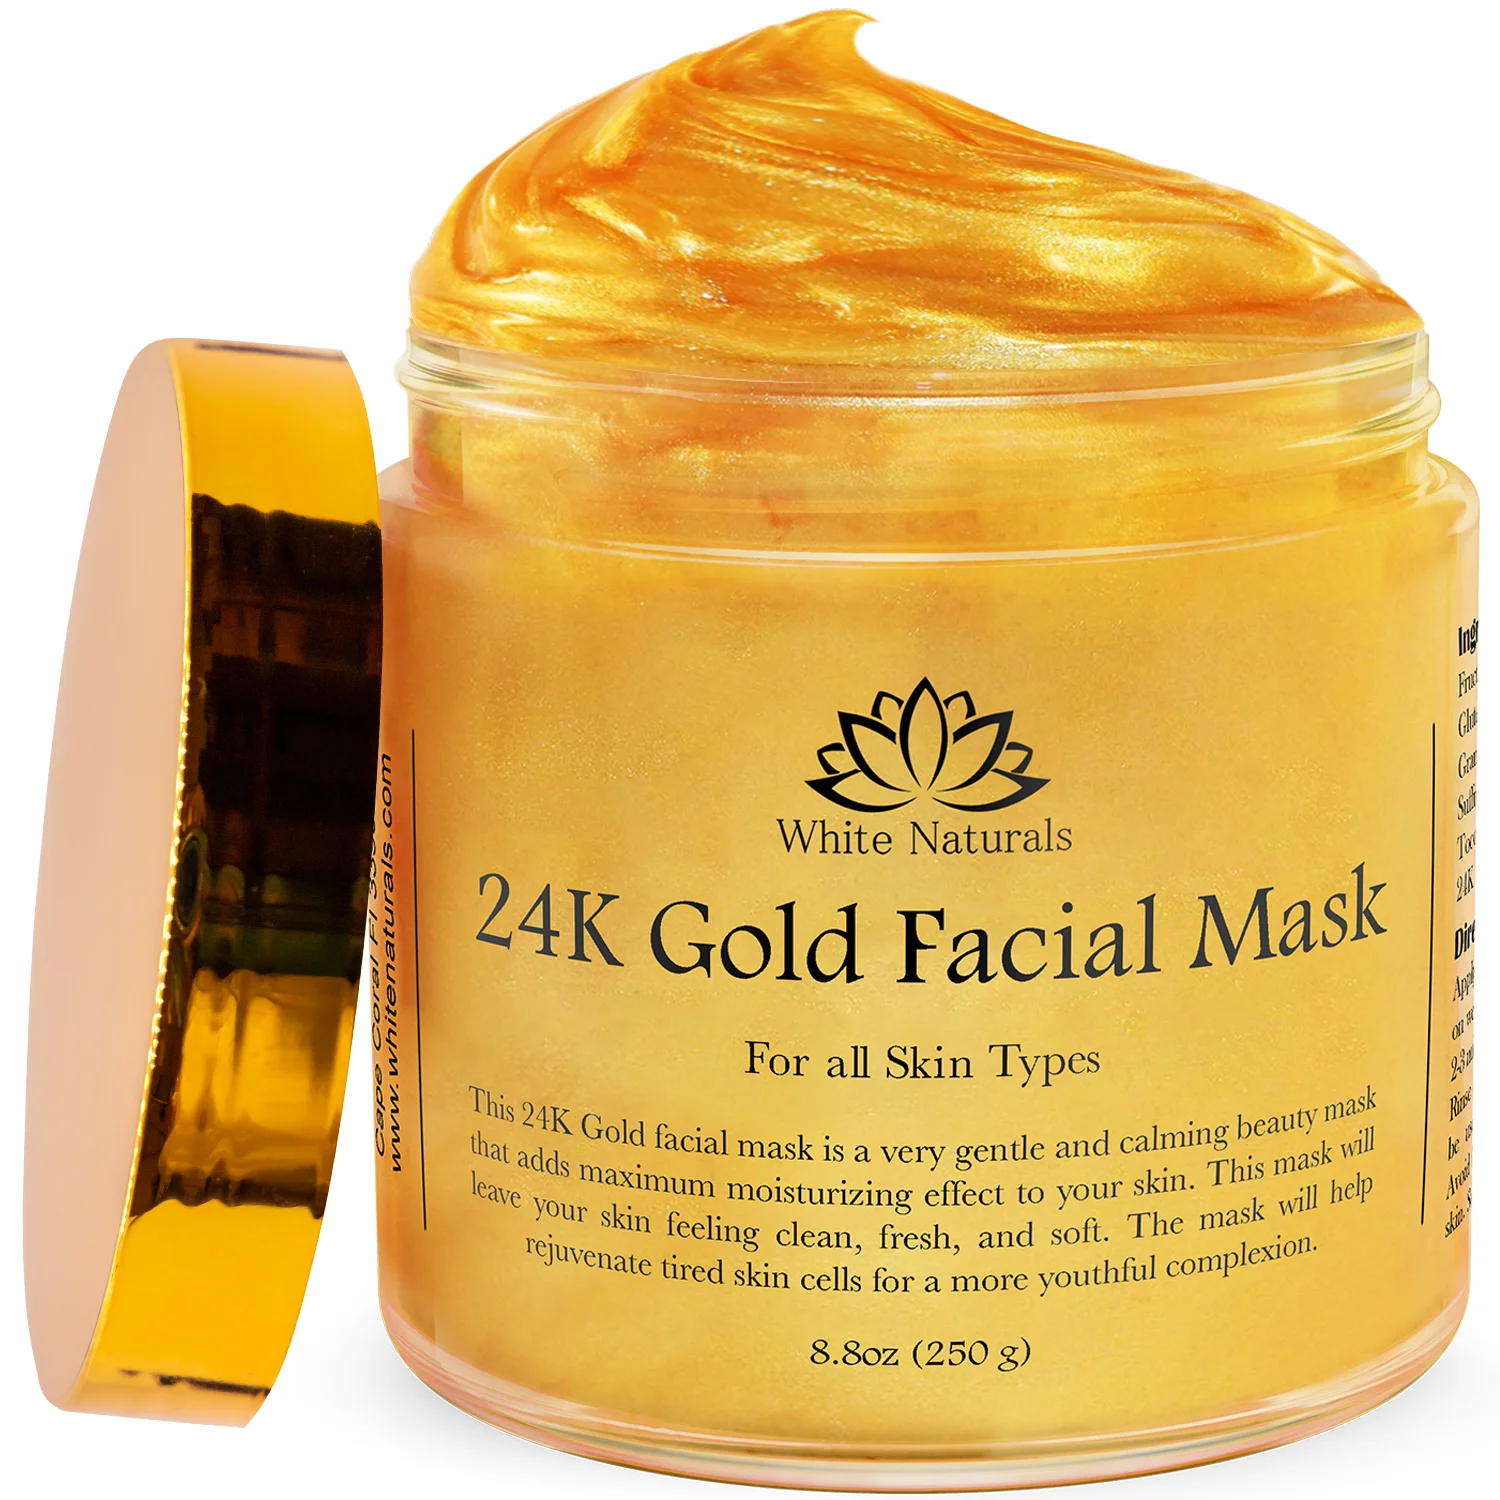 Glowing Up Máscara Facial Gold Fórmula Intense Care 40g - Natuphitus  Cosmética